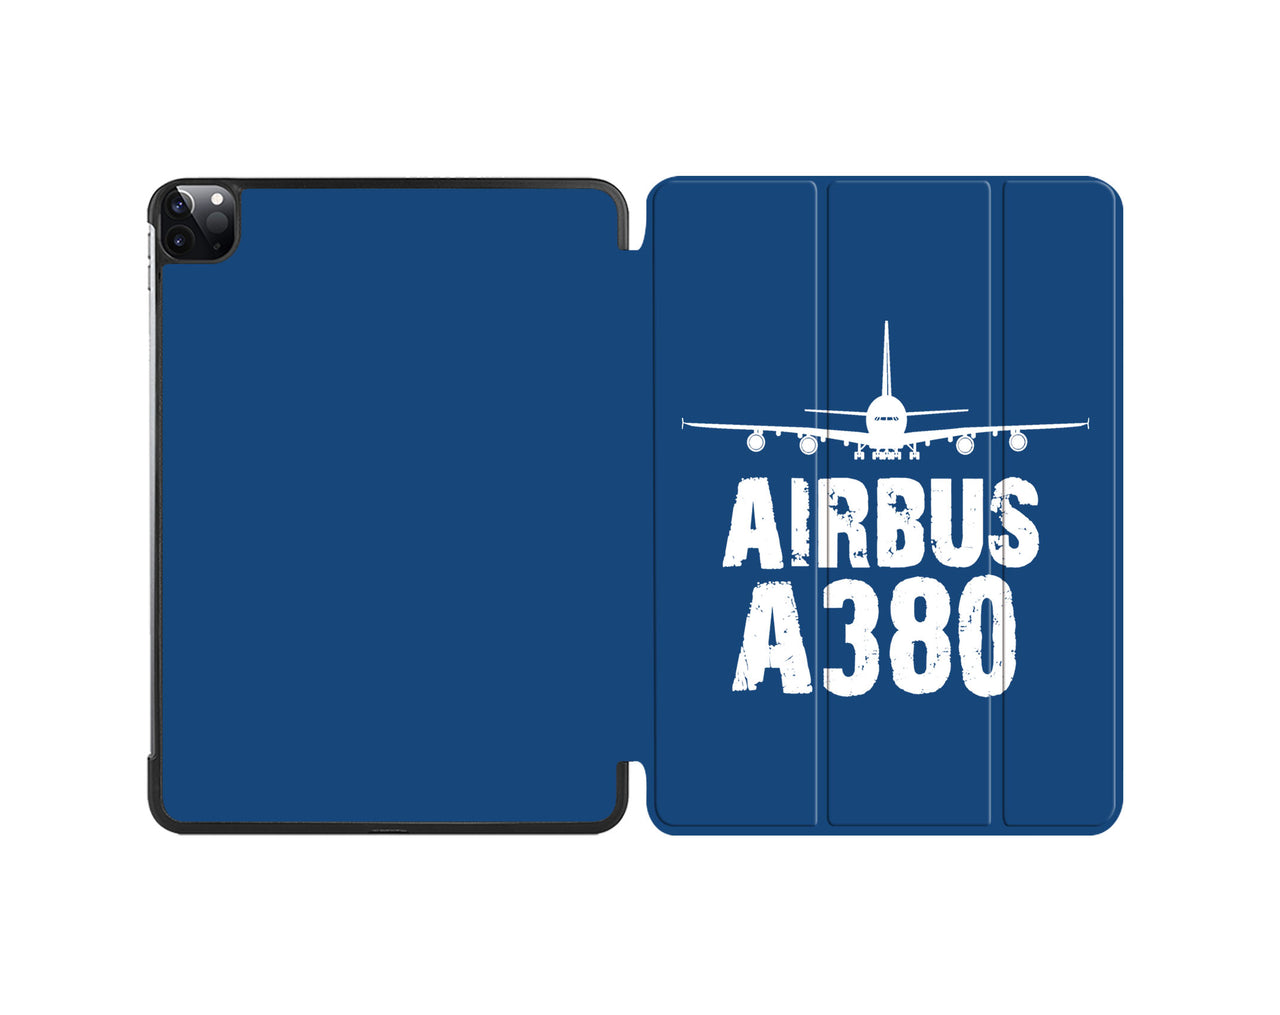 Airbus A380 & Plane Designed iPad Cases